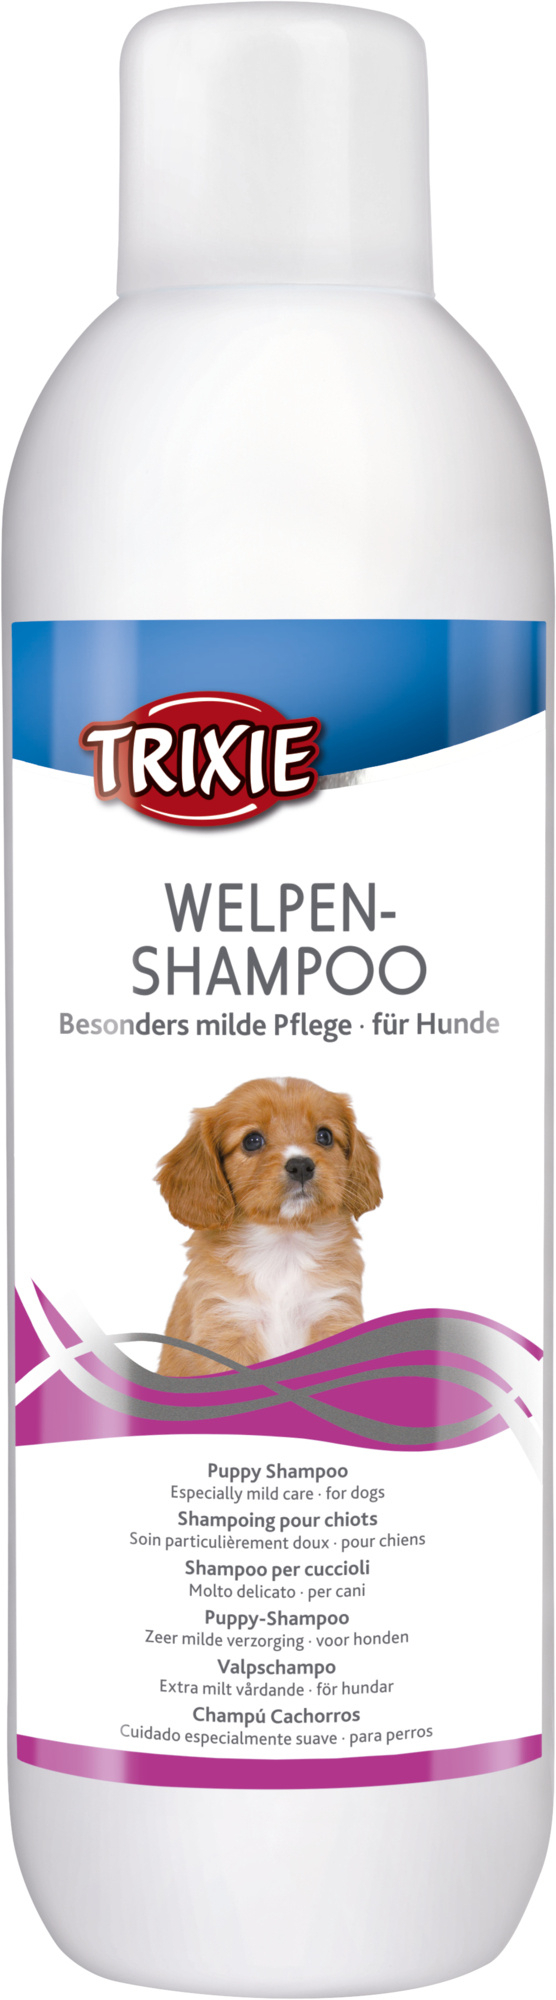 Shampoo per cuccioli Trixie